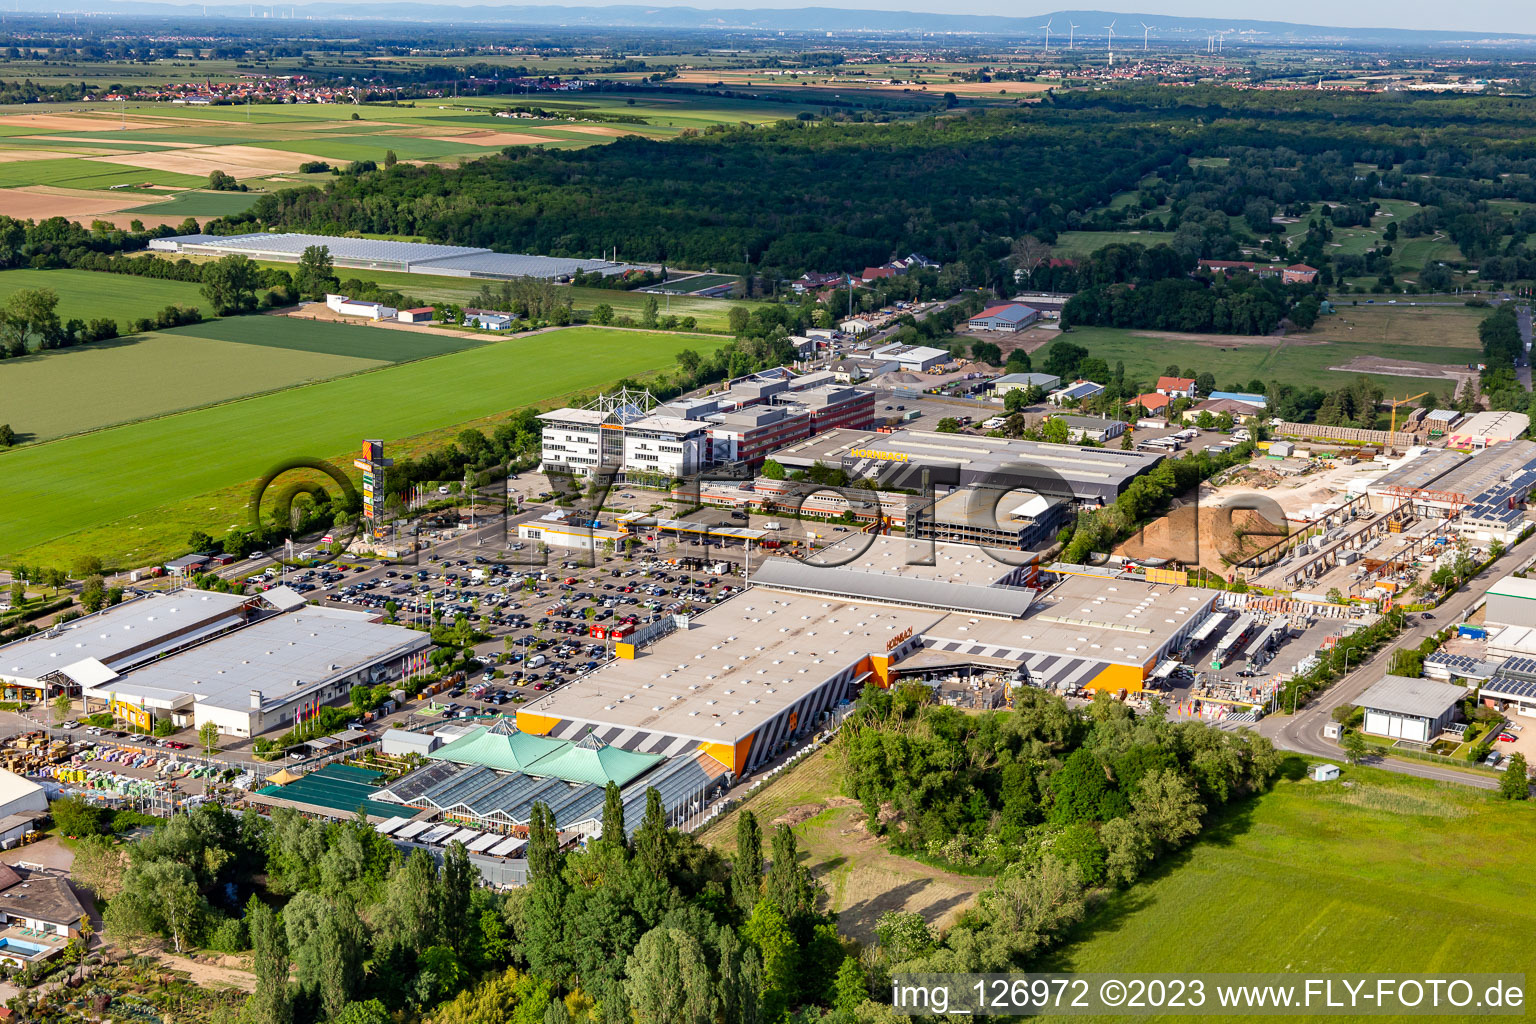 Vue oblique de Quincaillerie HORNBACH Bornheim dans la zone industrielle Bornheim à Bornheim dans le département Rhénanie-Palatinat, Allemagne